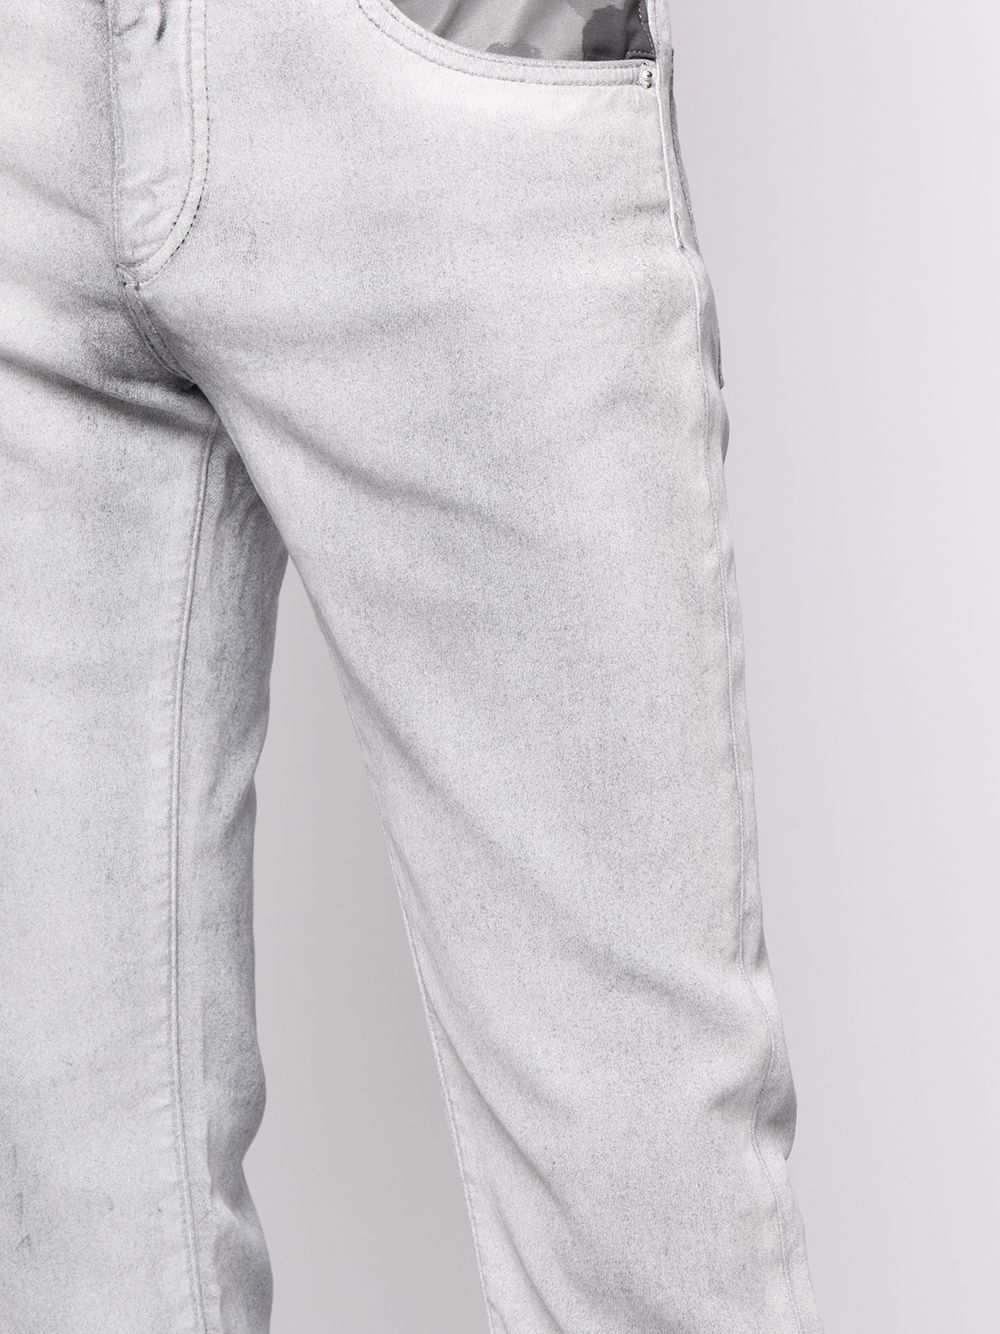 фото Dolce & gabbana узкие джинсы с камуфляжными вставками